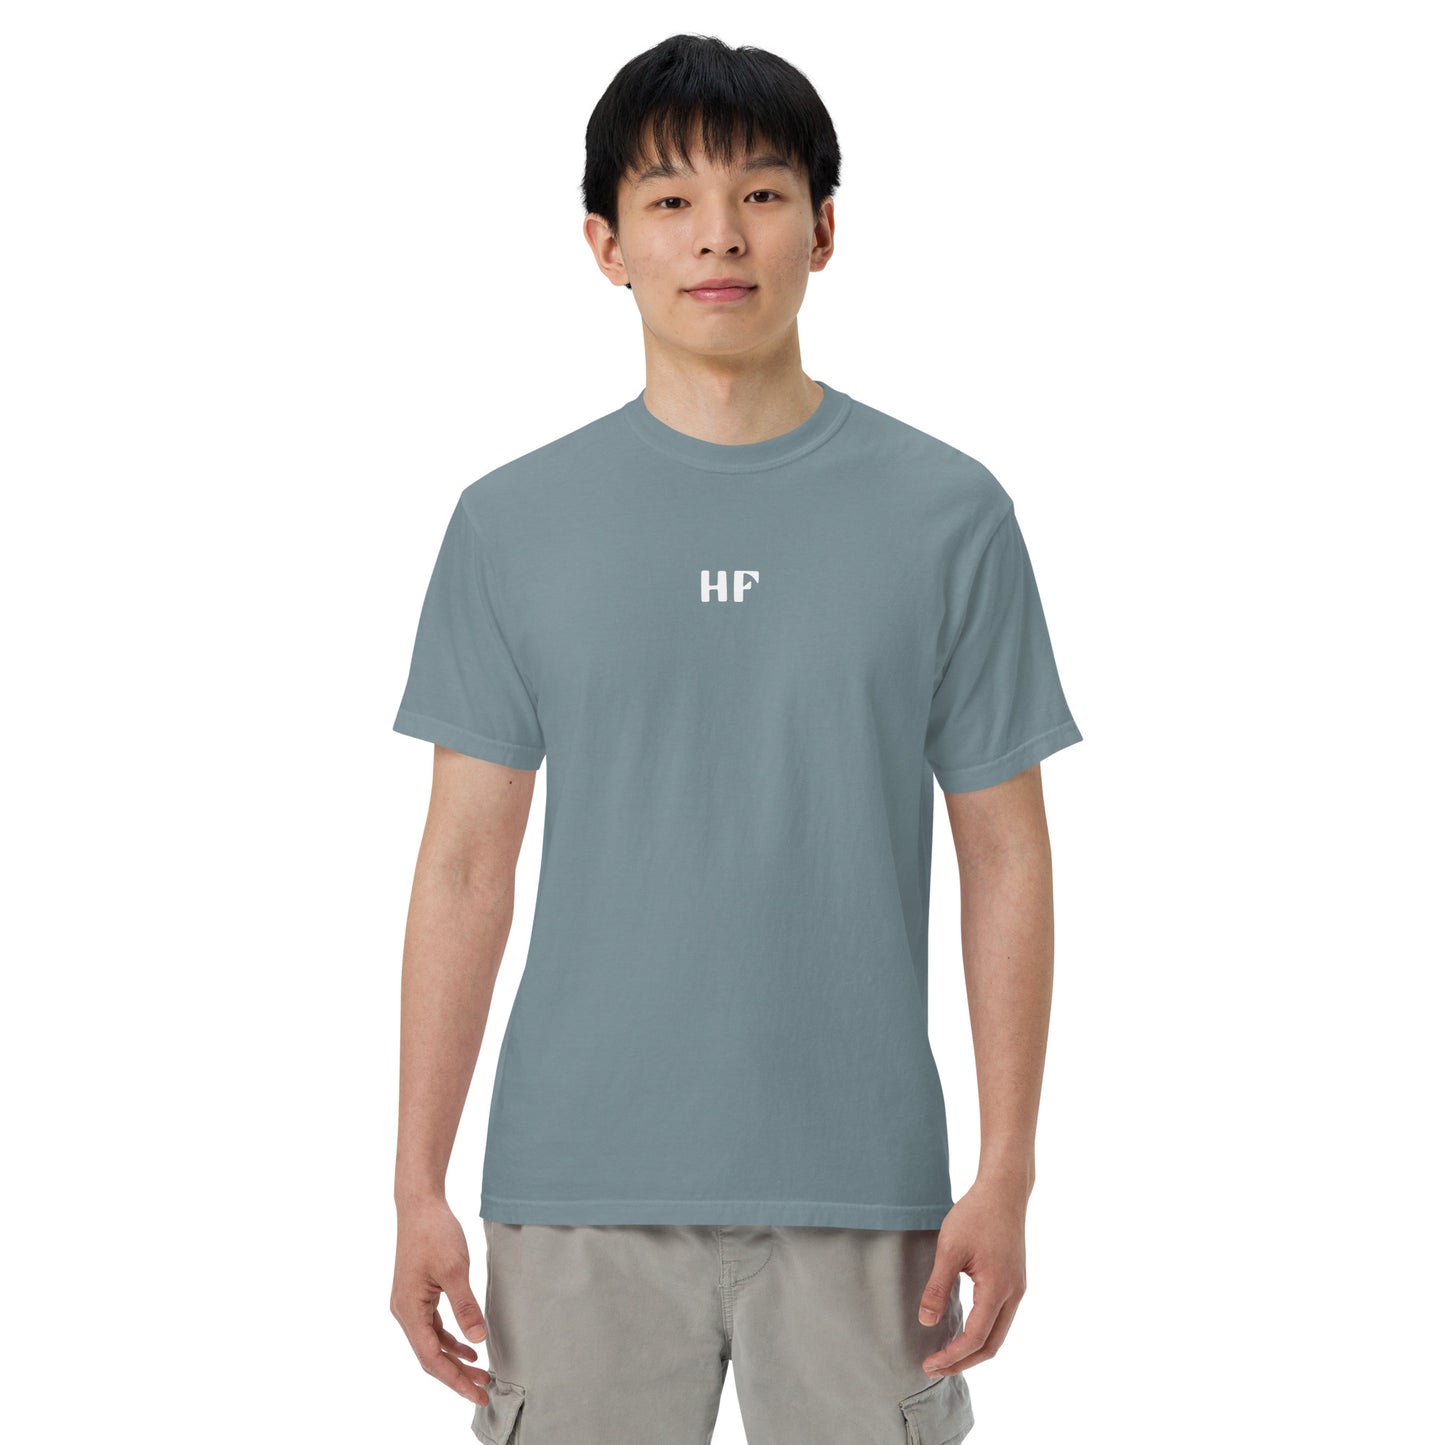 Highlands Music "I'll Follow You" Unisex garment-dyed heavyweight t-shirt